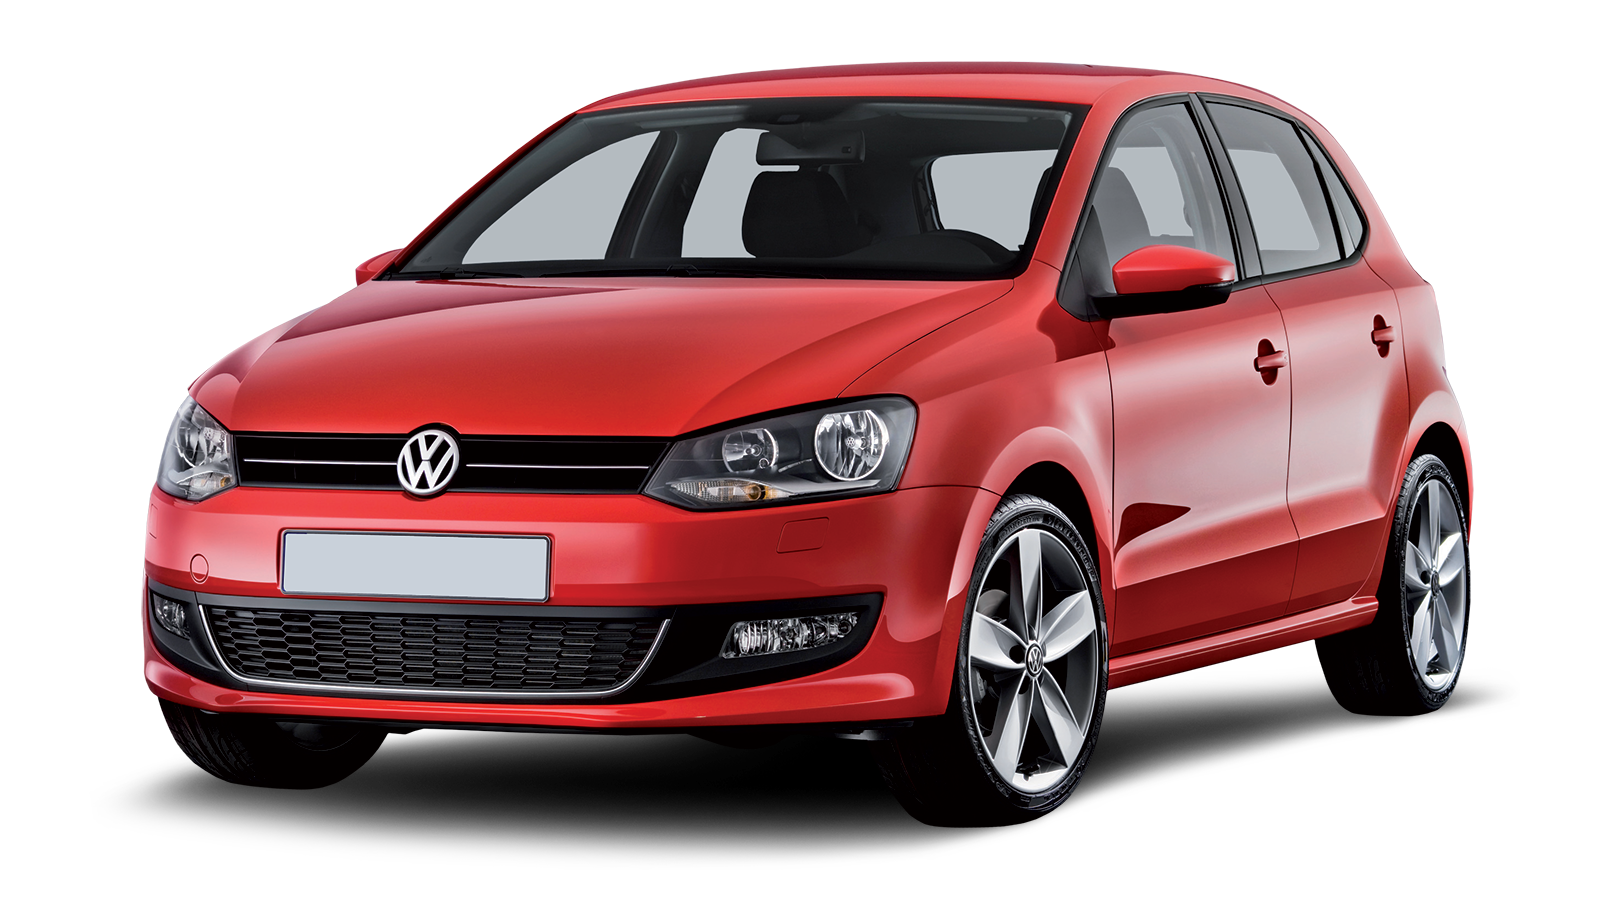 Volkswagen PNG car image, free download images